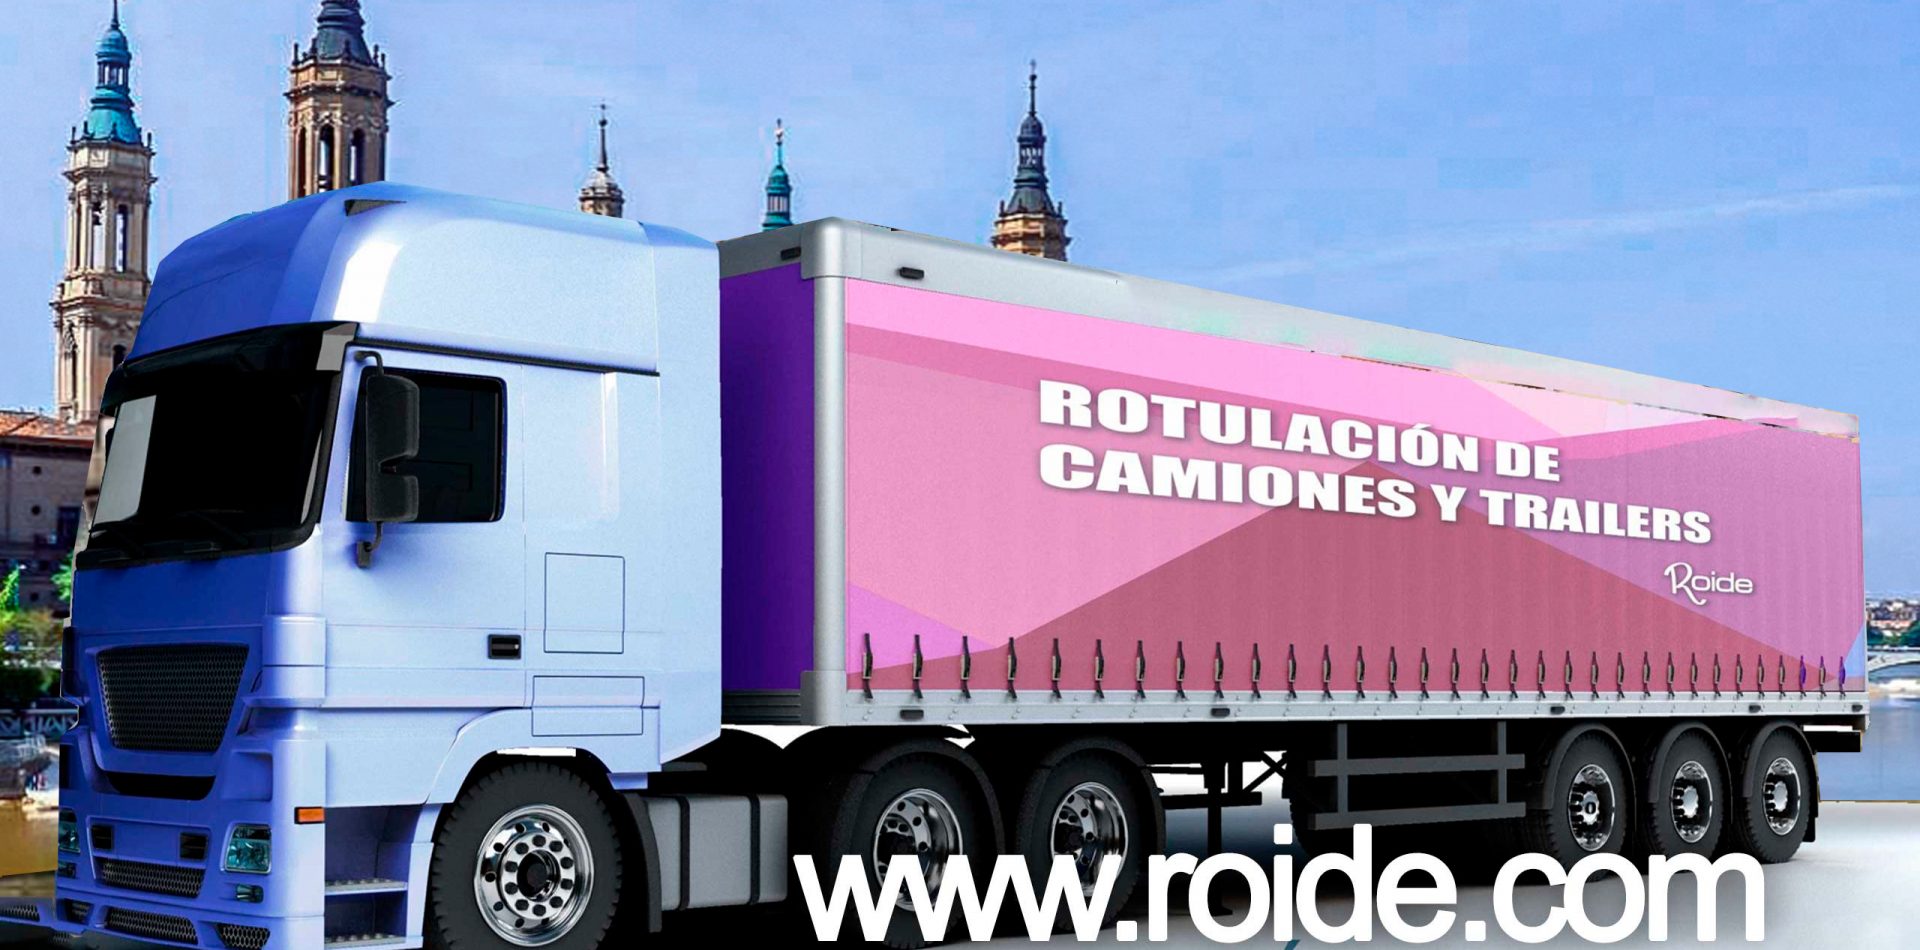 Rotulación de camiones y traileres en Zaragoza